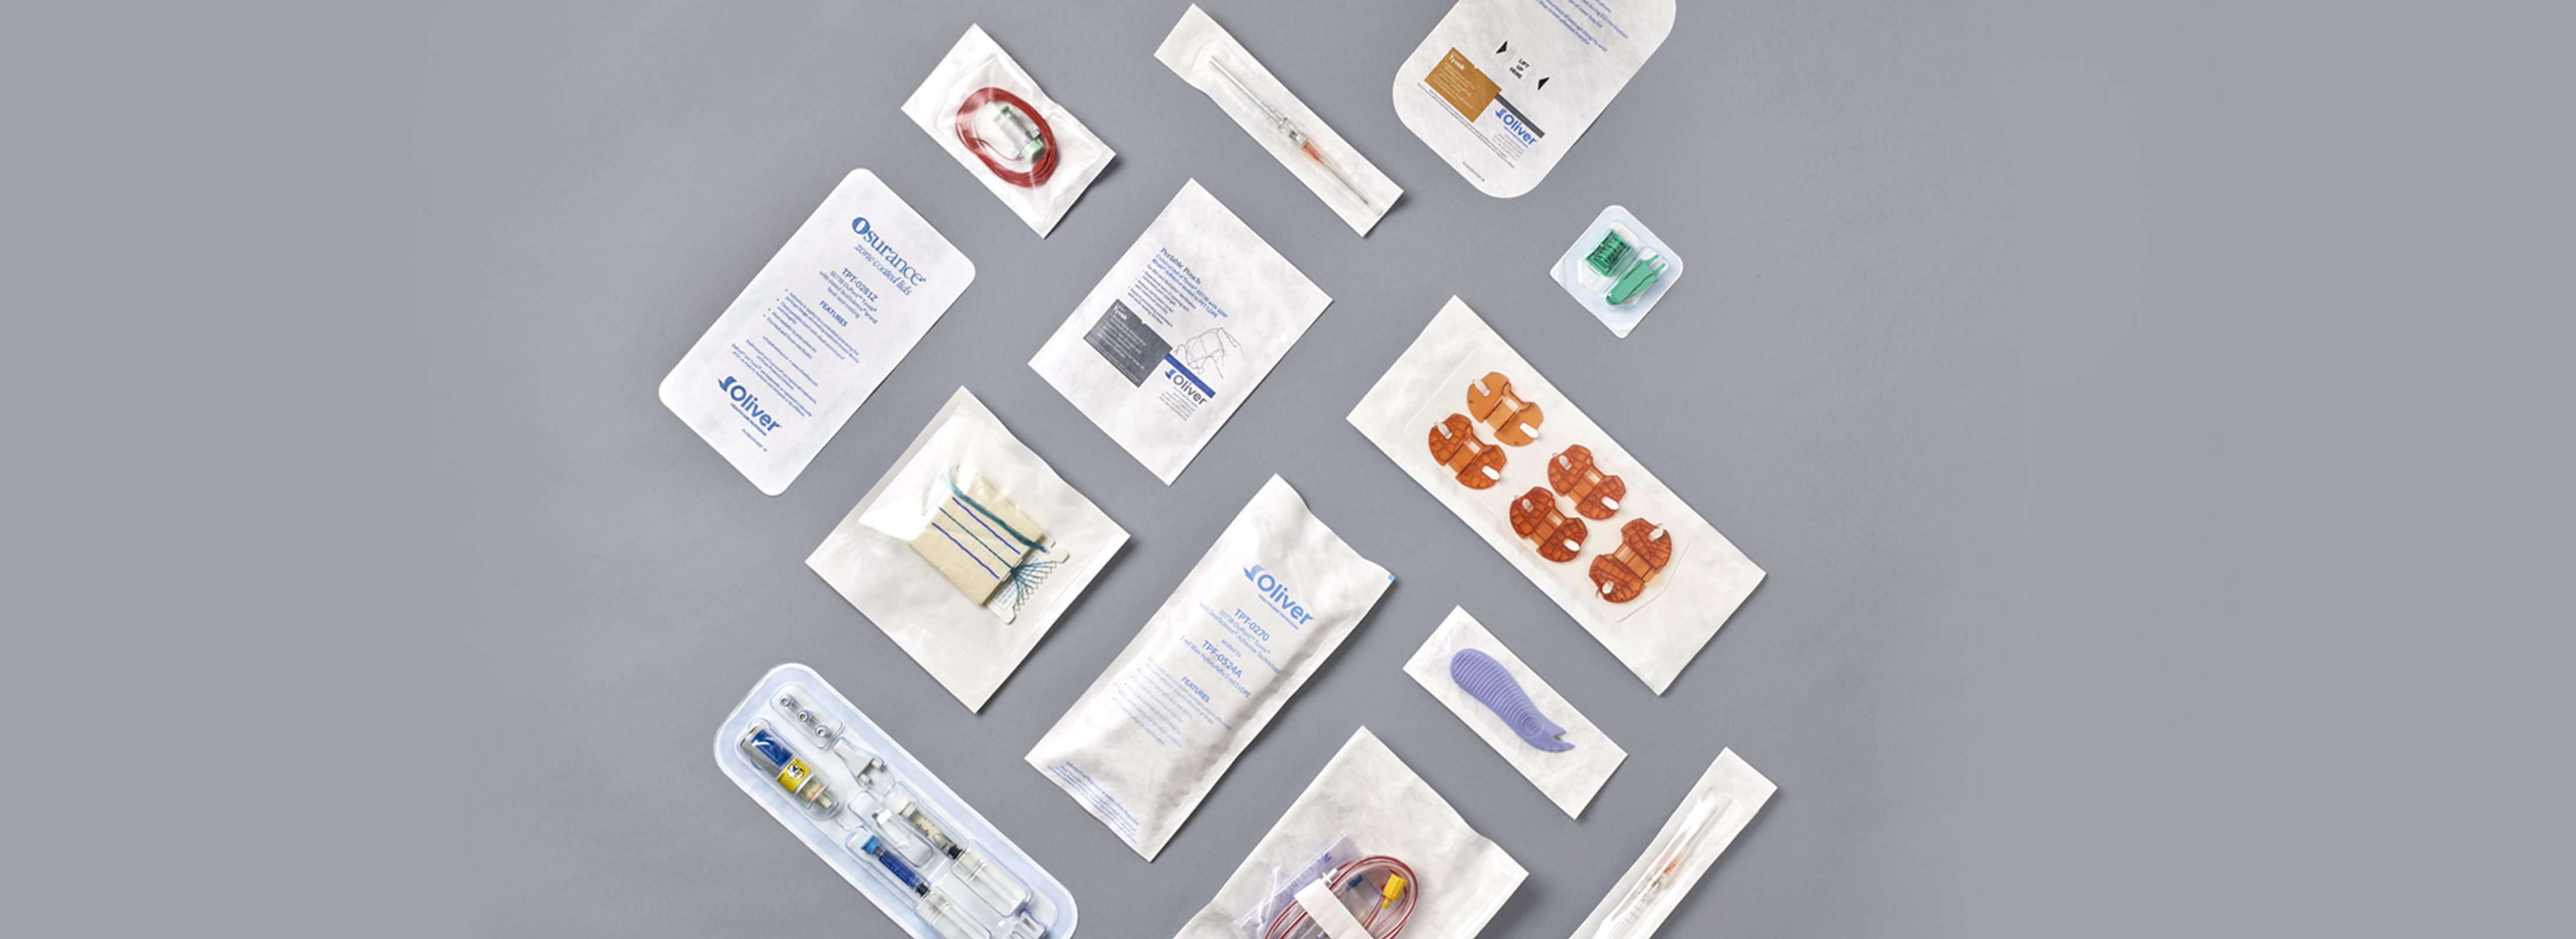 가열 밀봉 의료용 포장 접착제 | Oliver Healthcare Packaging